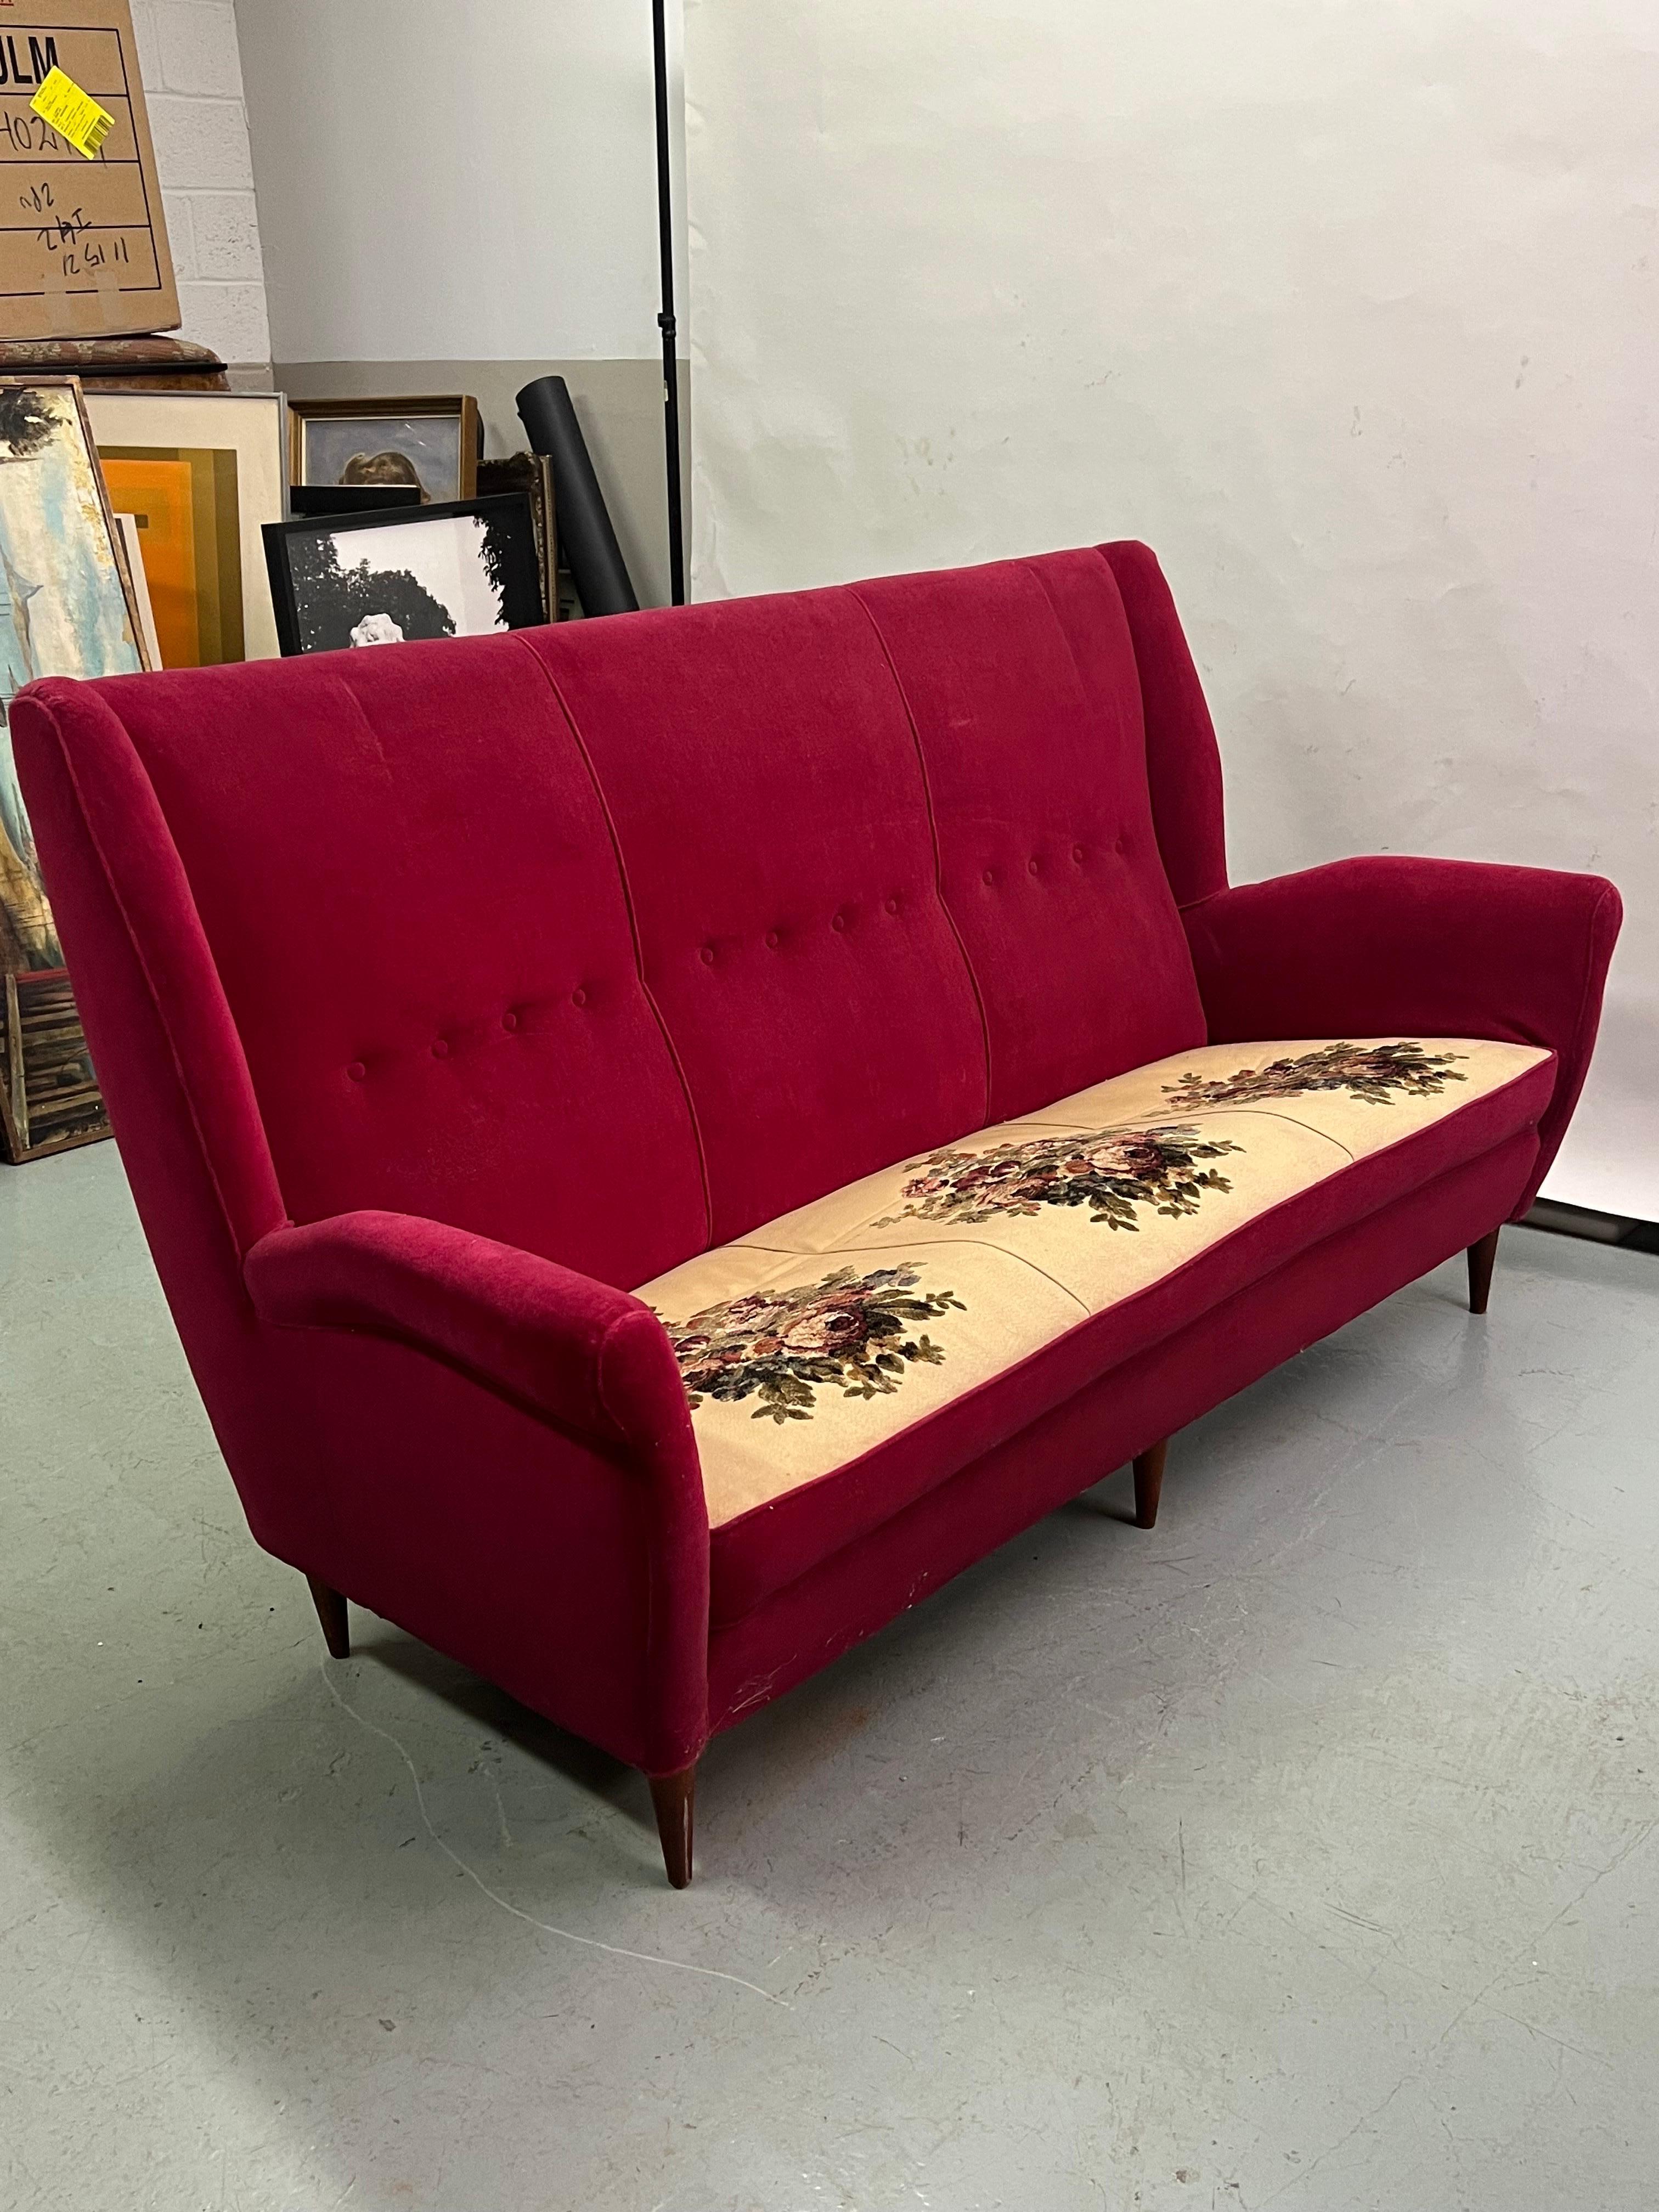 Ein elegantes, atemberaubendes italienisches Mid-Century Modern Sofa mit modernen neoklassischen Einflüssen von Gio Ponti für Editions ISA, Bergamo, um 1955. Dieses Sofa zeichnet sich durch eine hohe Rückenlehne, Ohrensessel, ein ausgeprägtes,